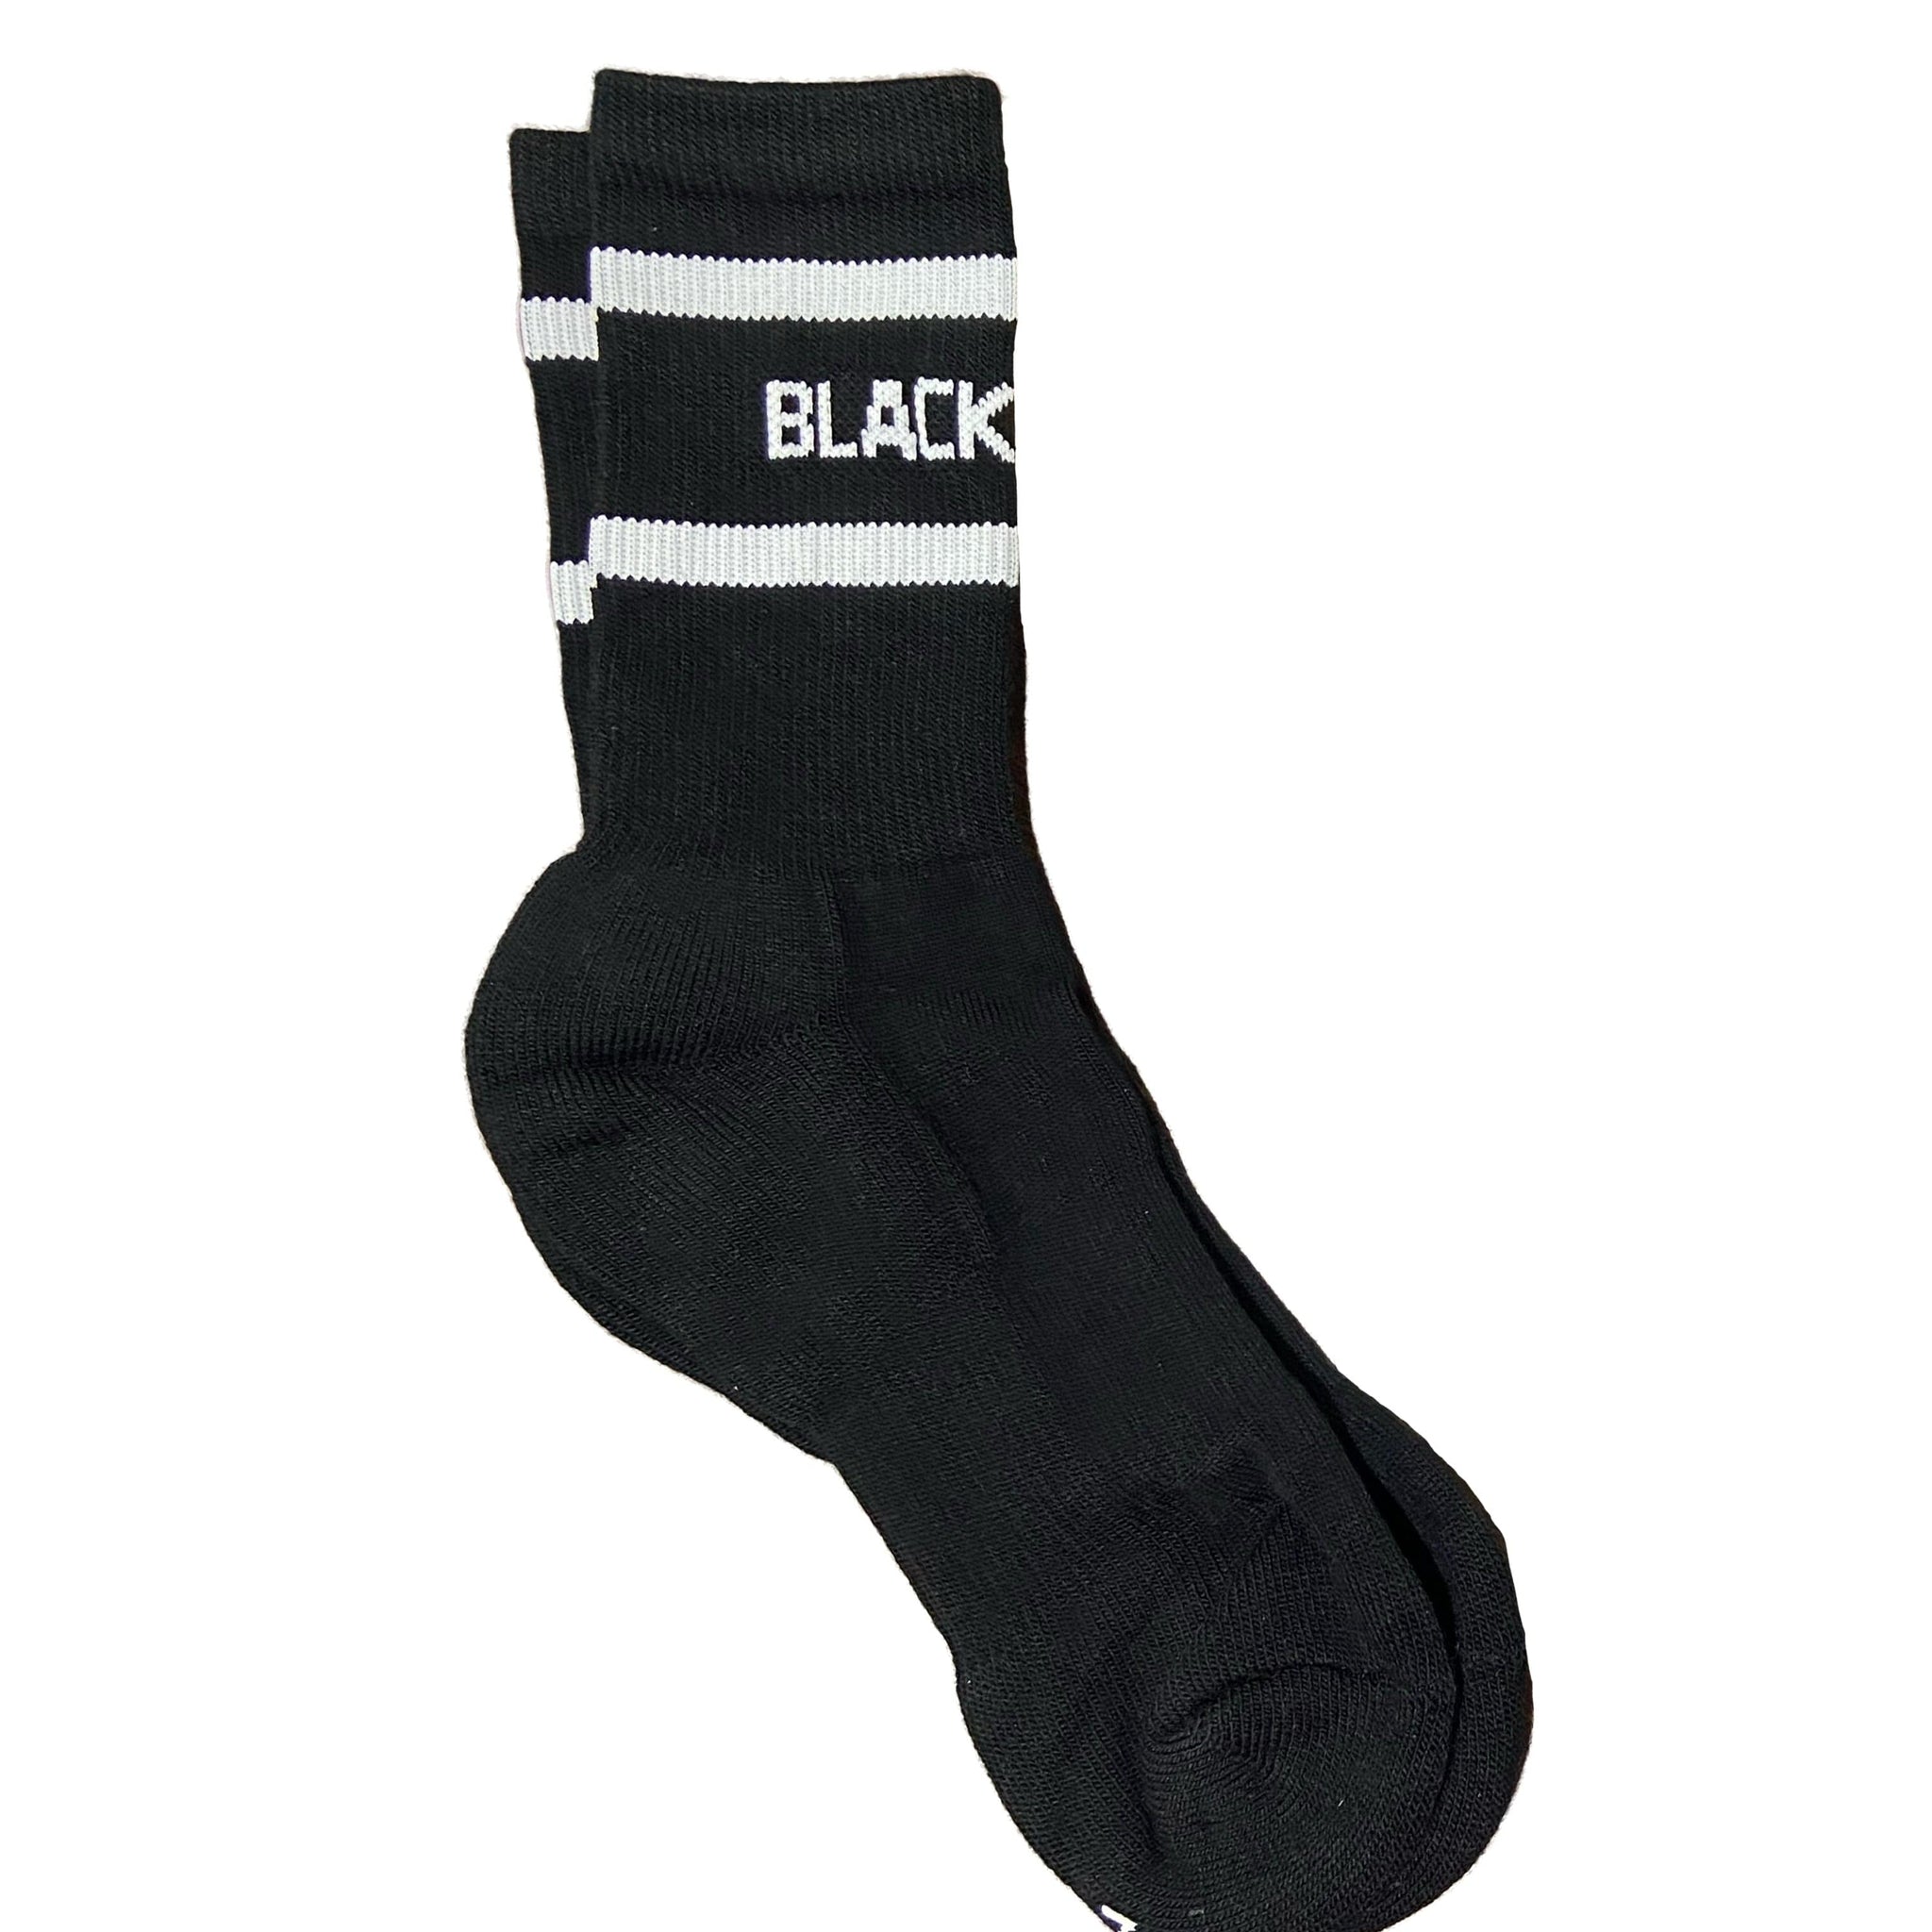 InkAddict Black Sheep Socks